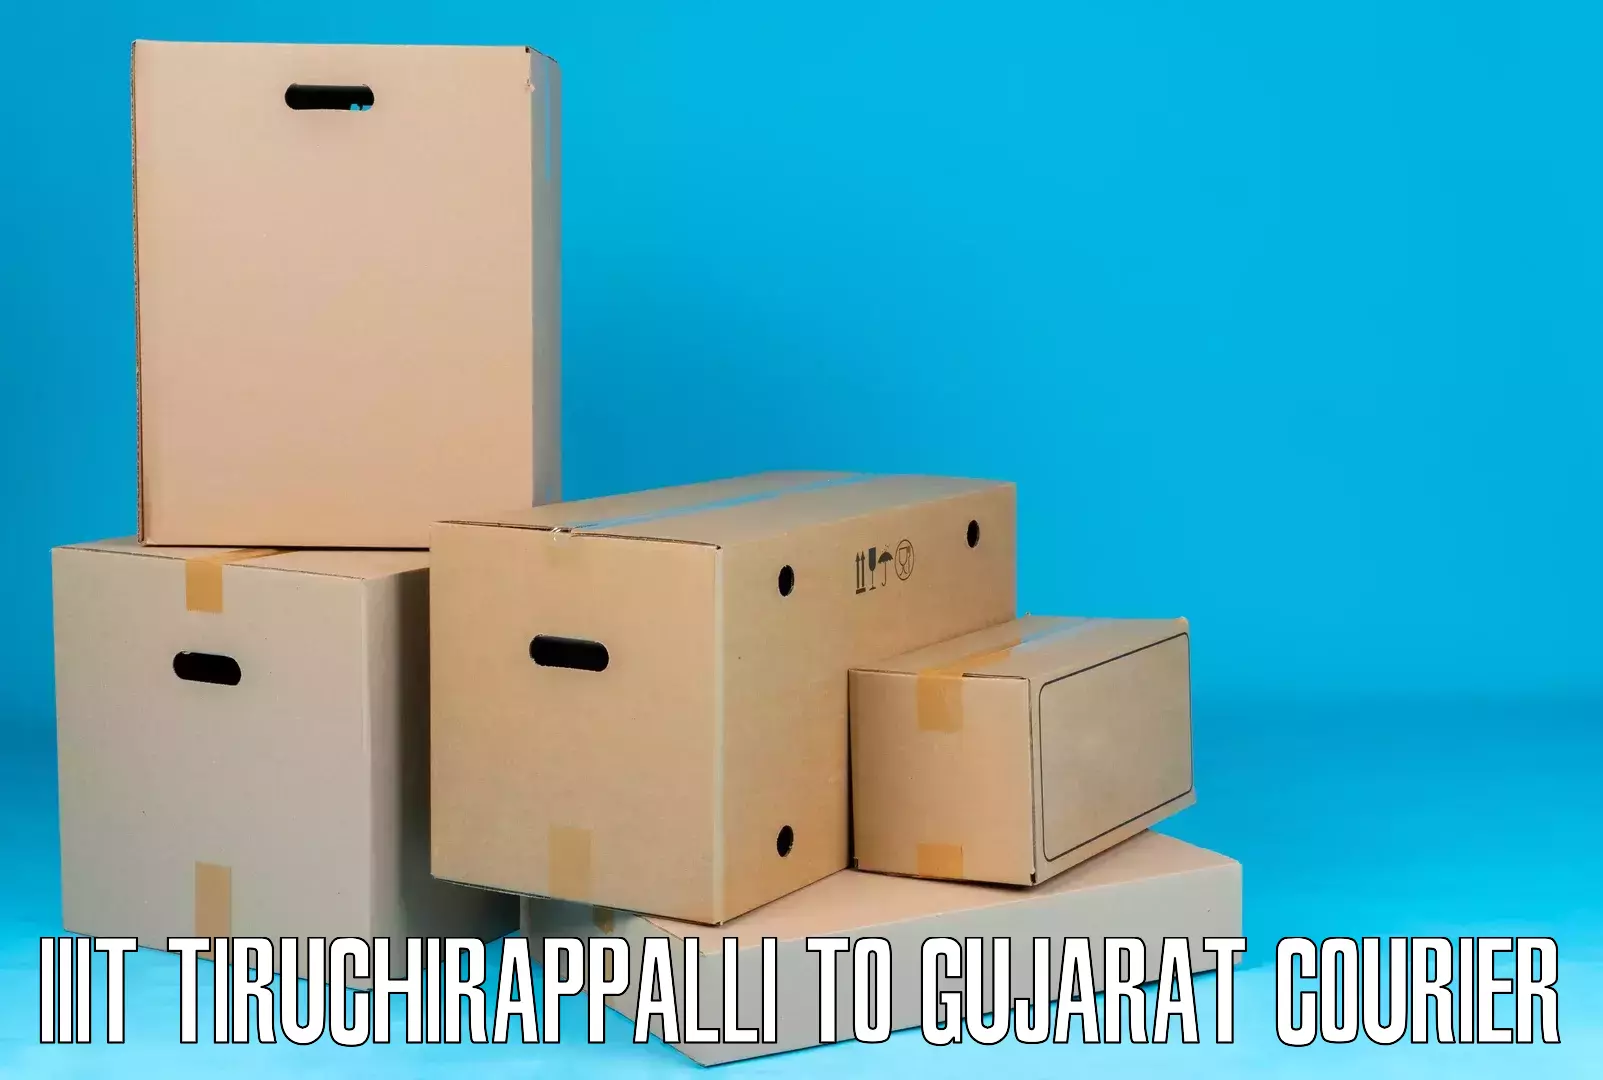 Express logistics providers IIIT Tiruchirappalli to Patan Gujarat